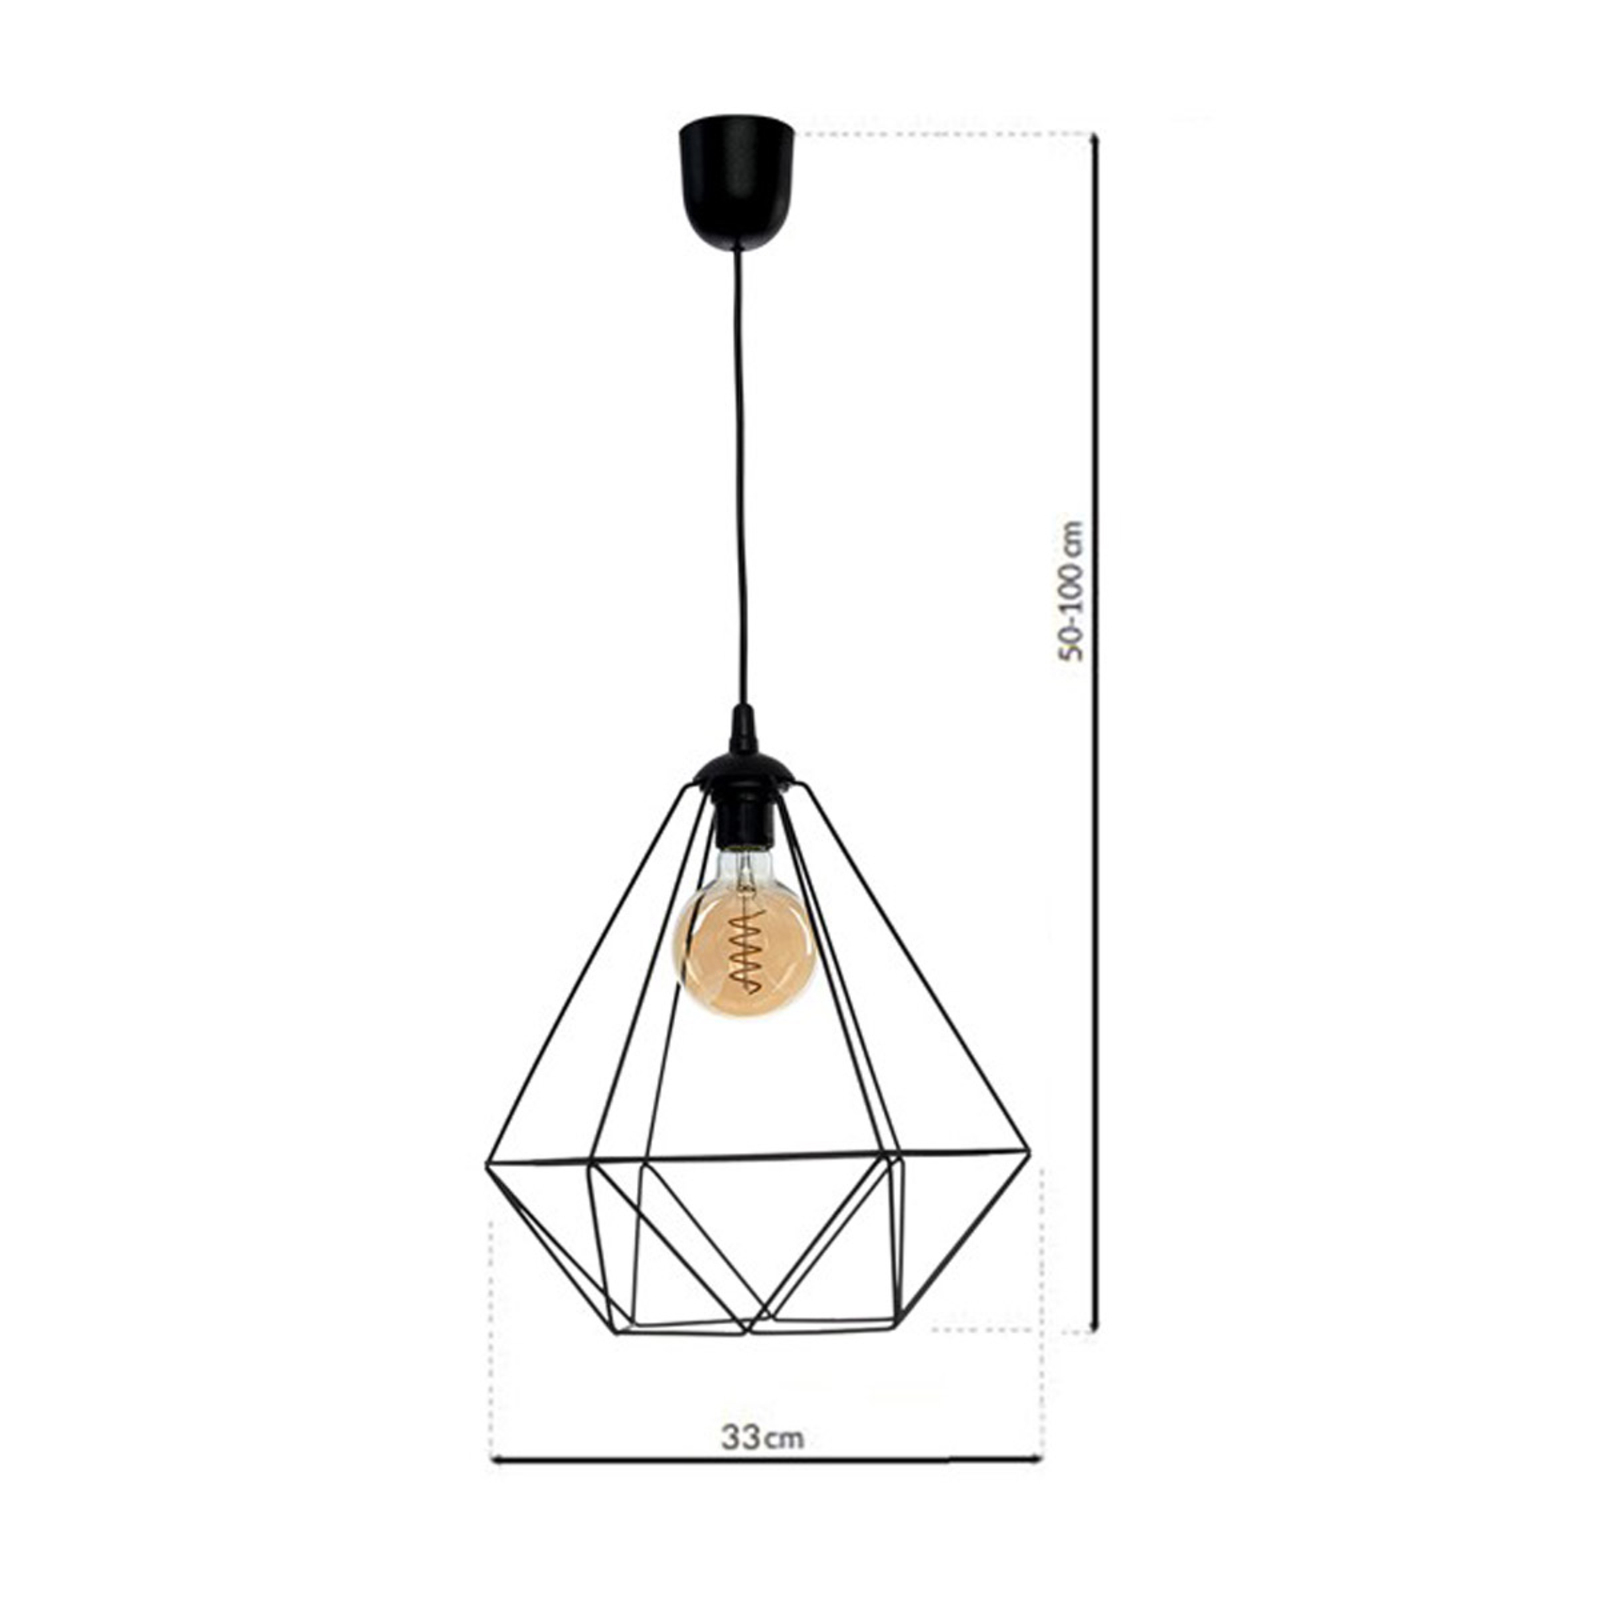 Basket hanging light, black, one-bulb